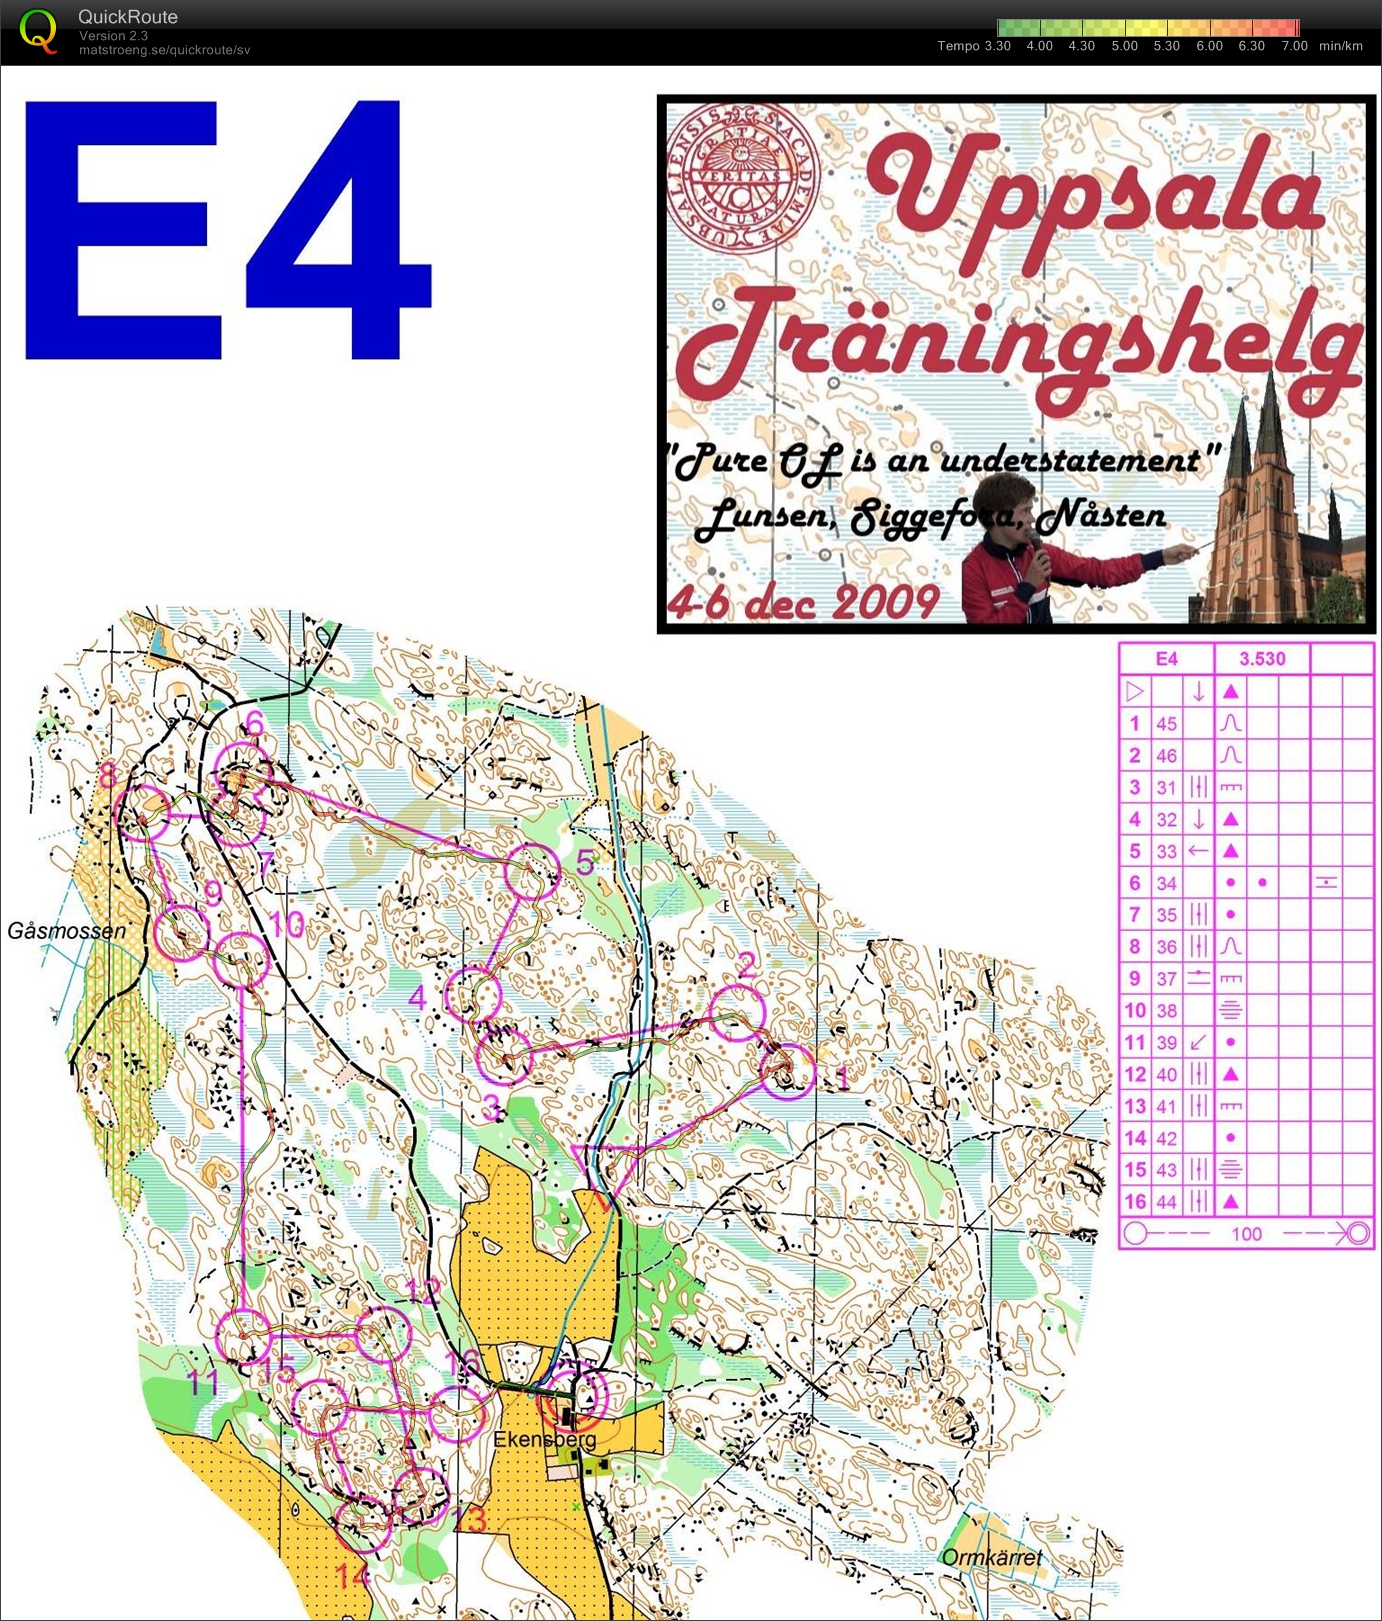 Uppsala träningshelg - Medel Ekensberg (2009-12-05)